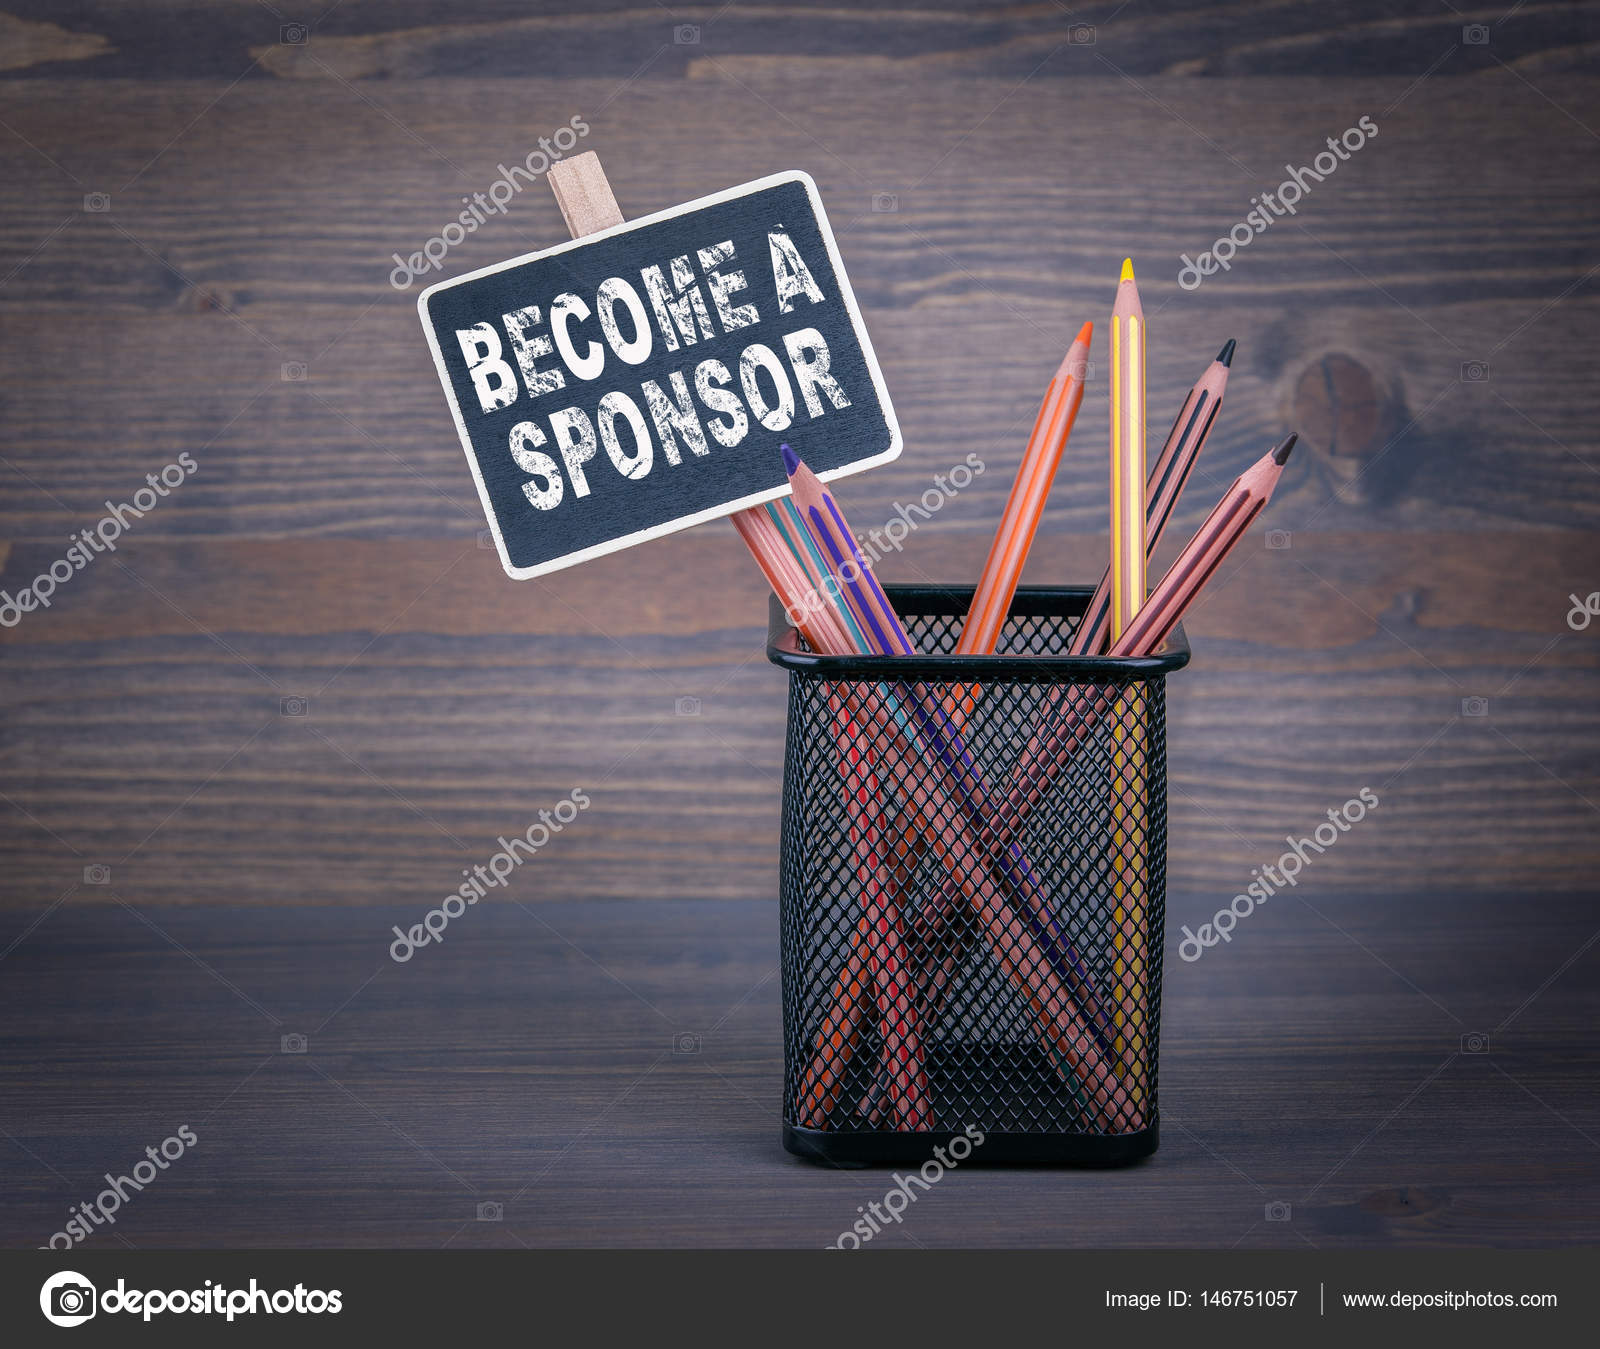 https://st3.depositphotos.com/4282501/14675/i/1600/depositphotos_146751057-stock-photo-become-a-sponsor-a-small.jpg